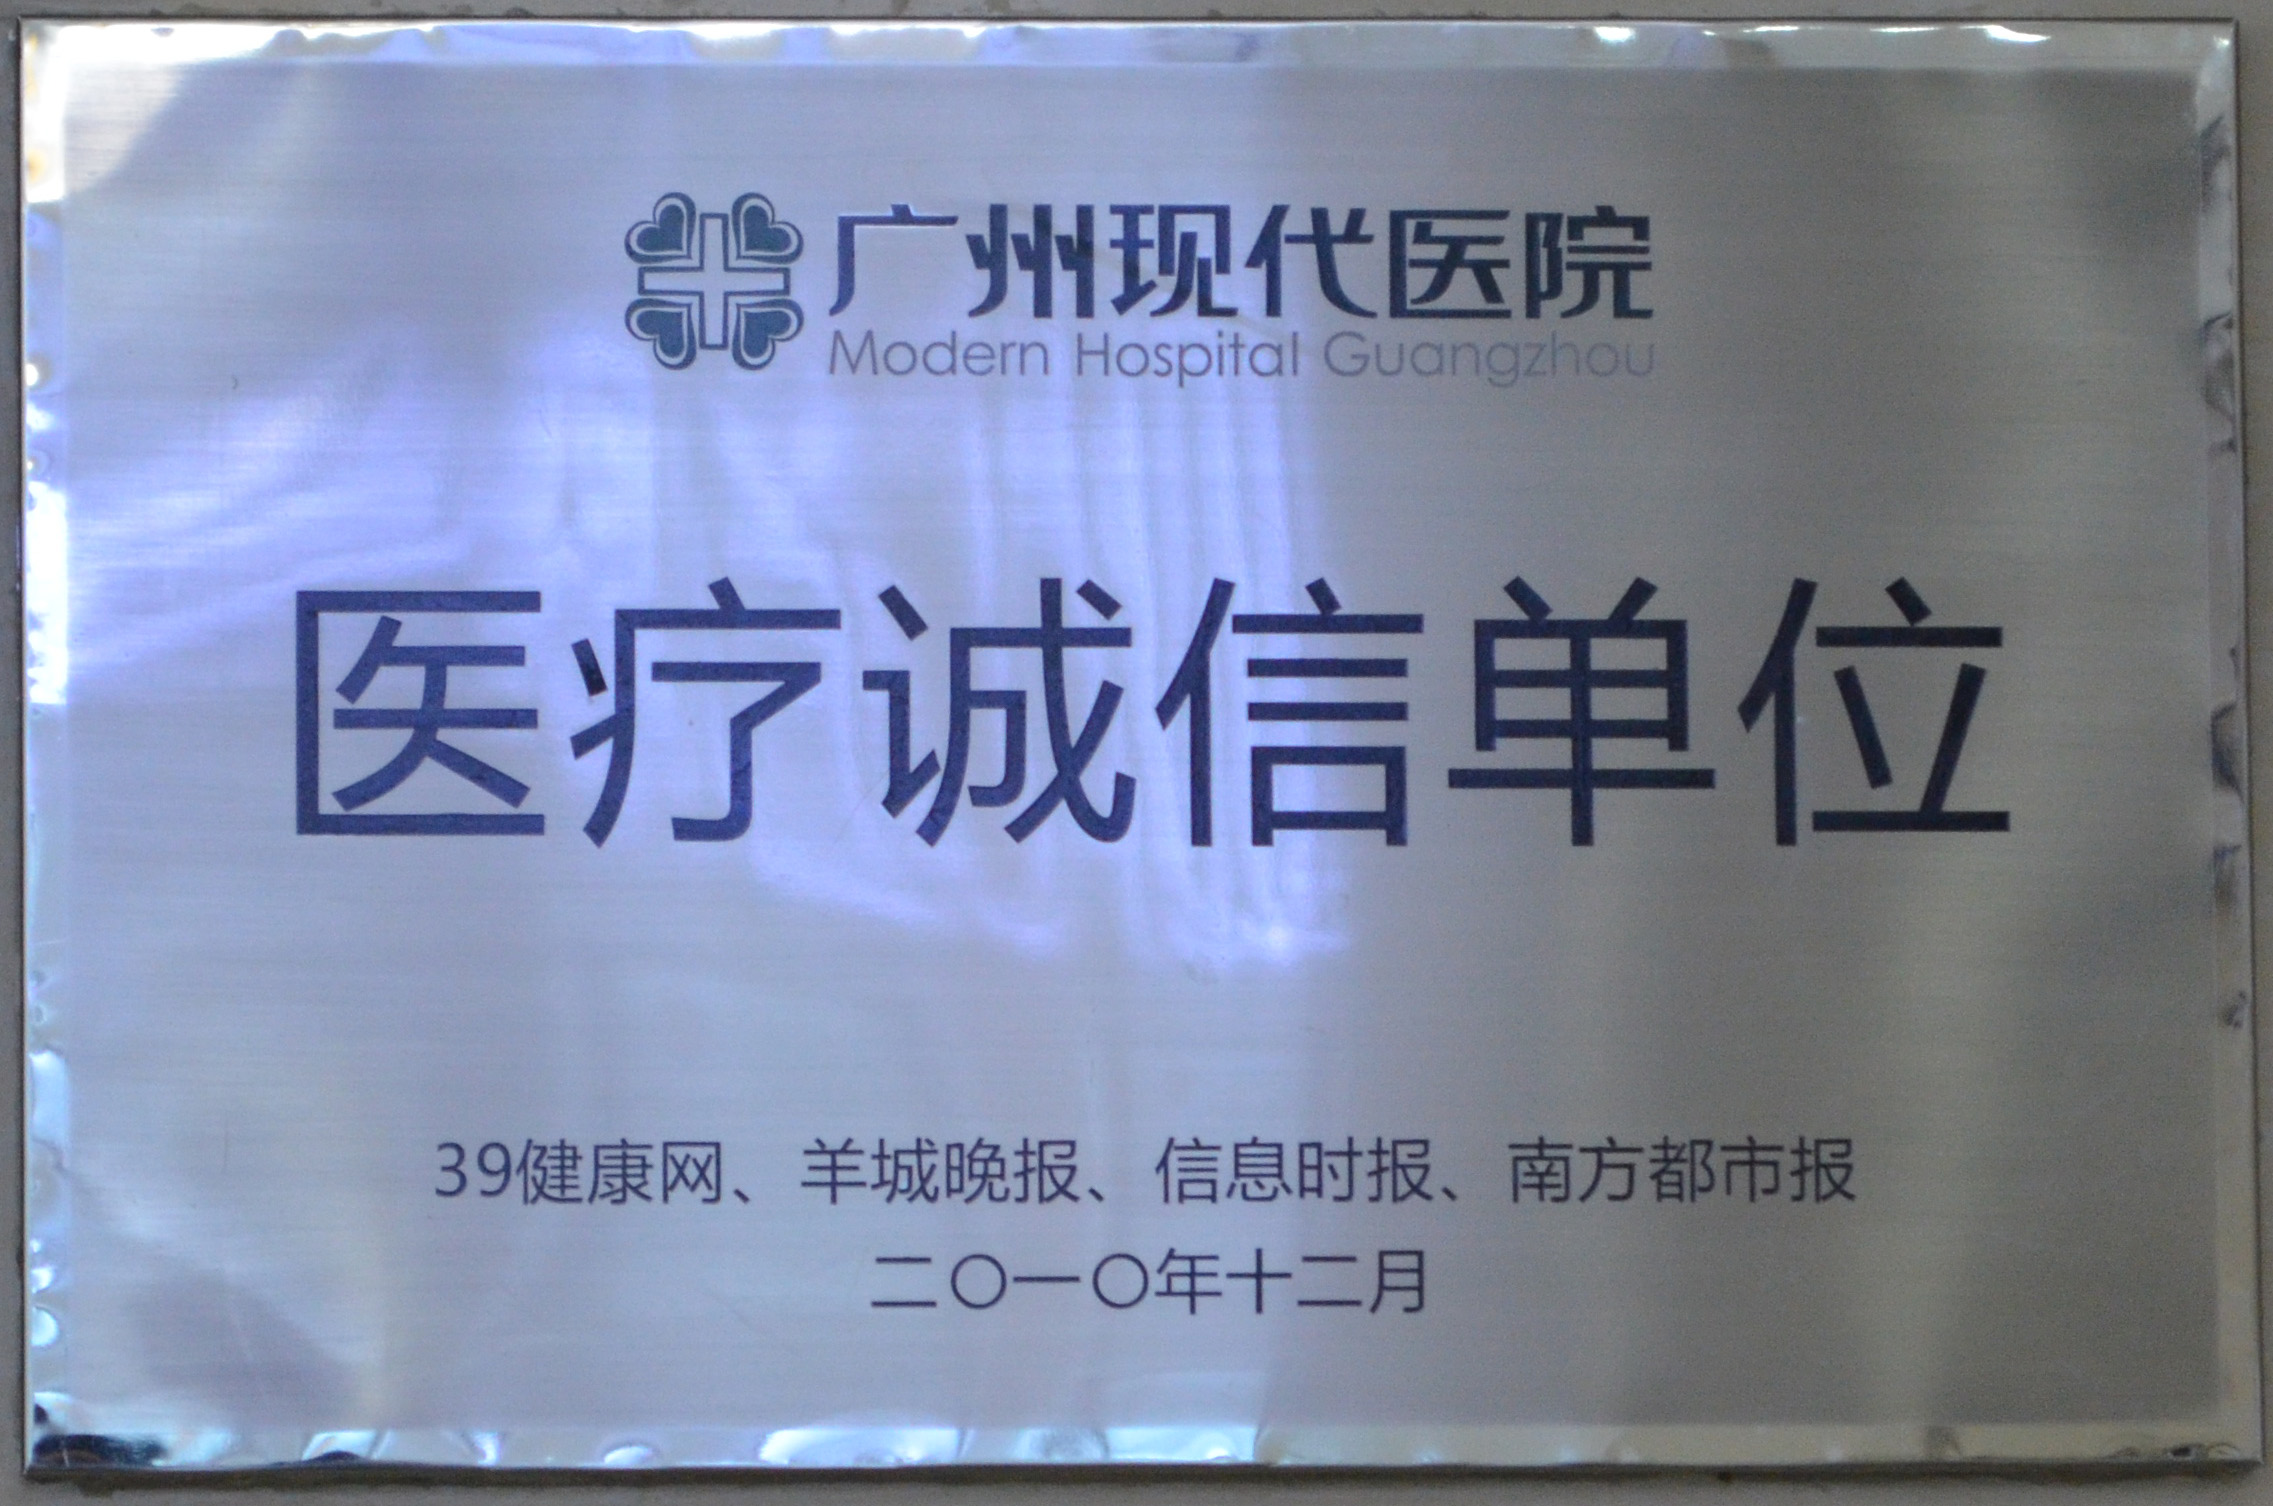 广州现代医院被评为“诚信单位”